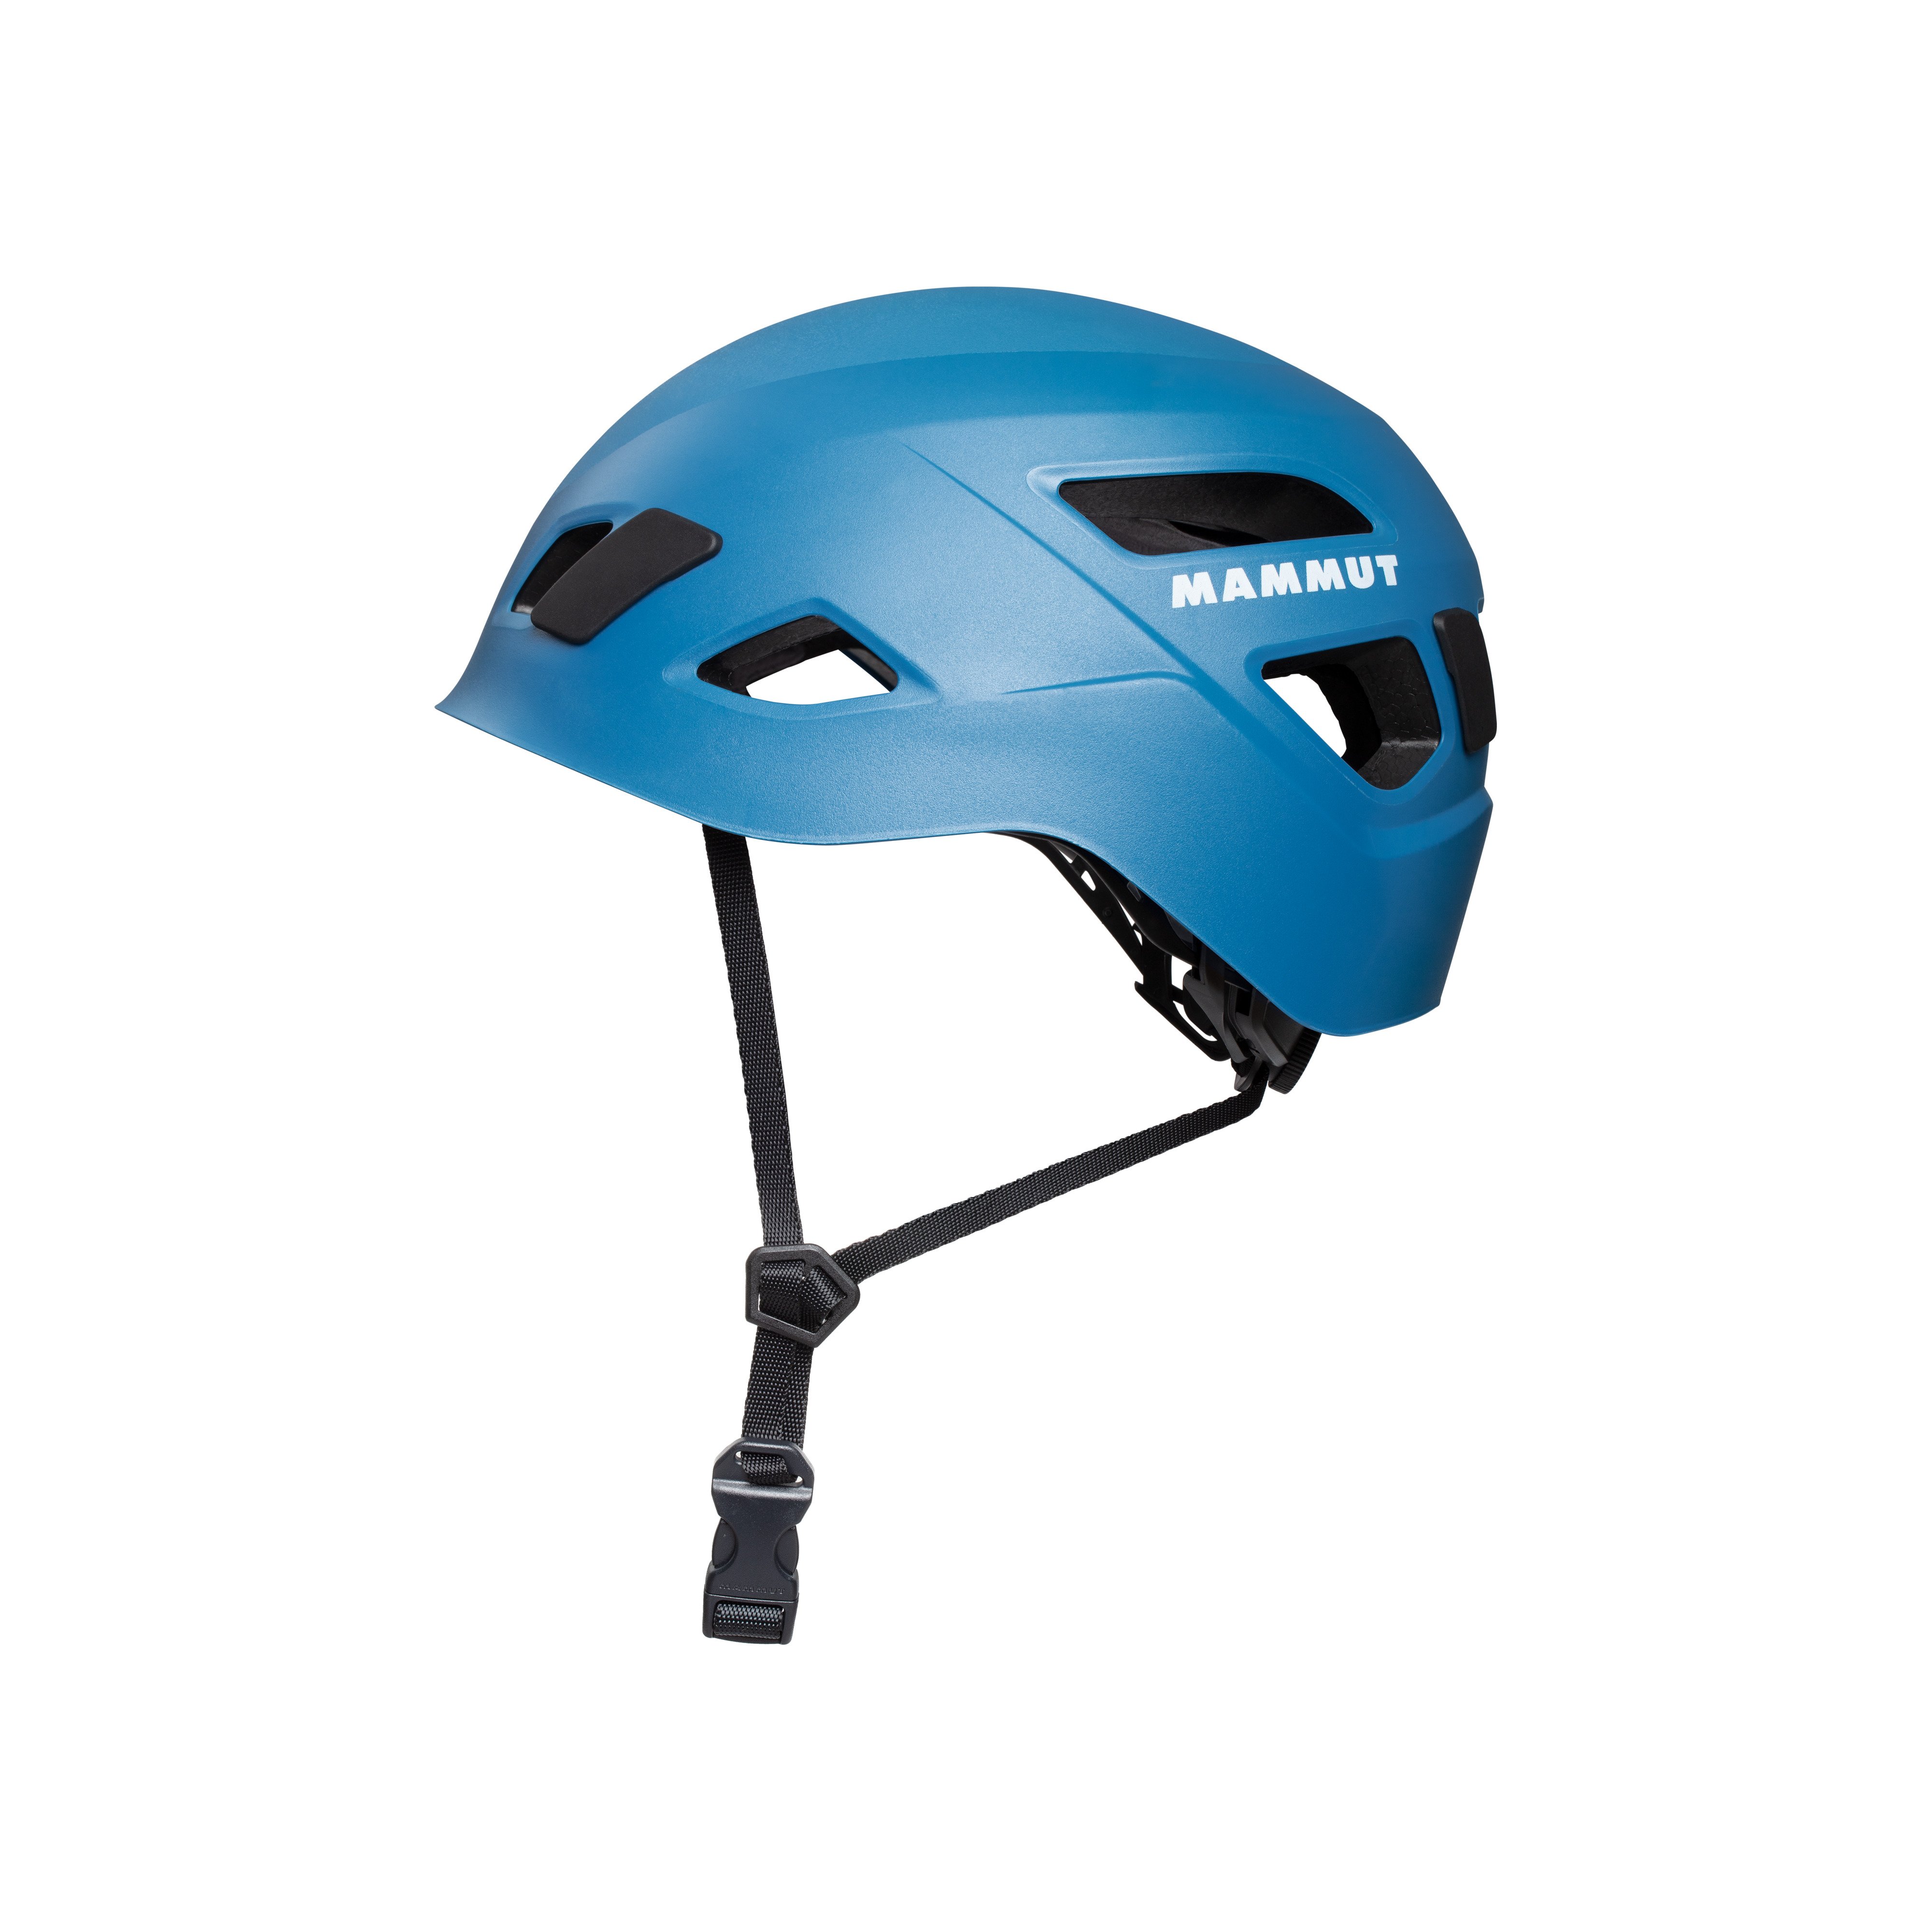 Skywalker 3.0 Helmet - blue, one size product image